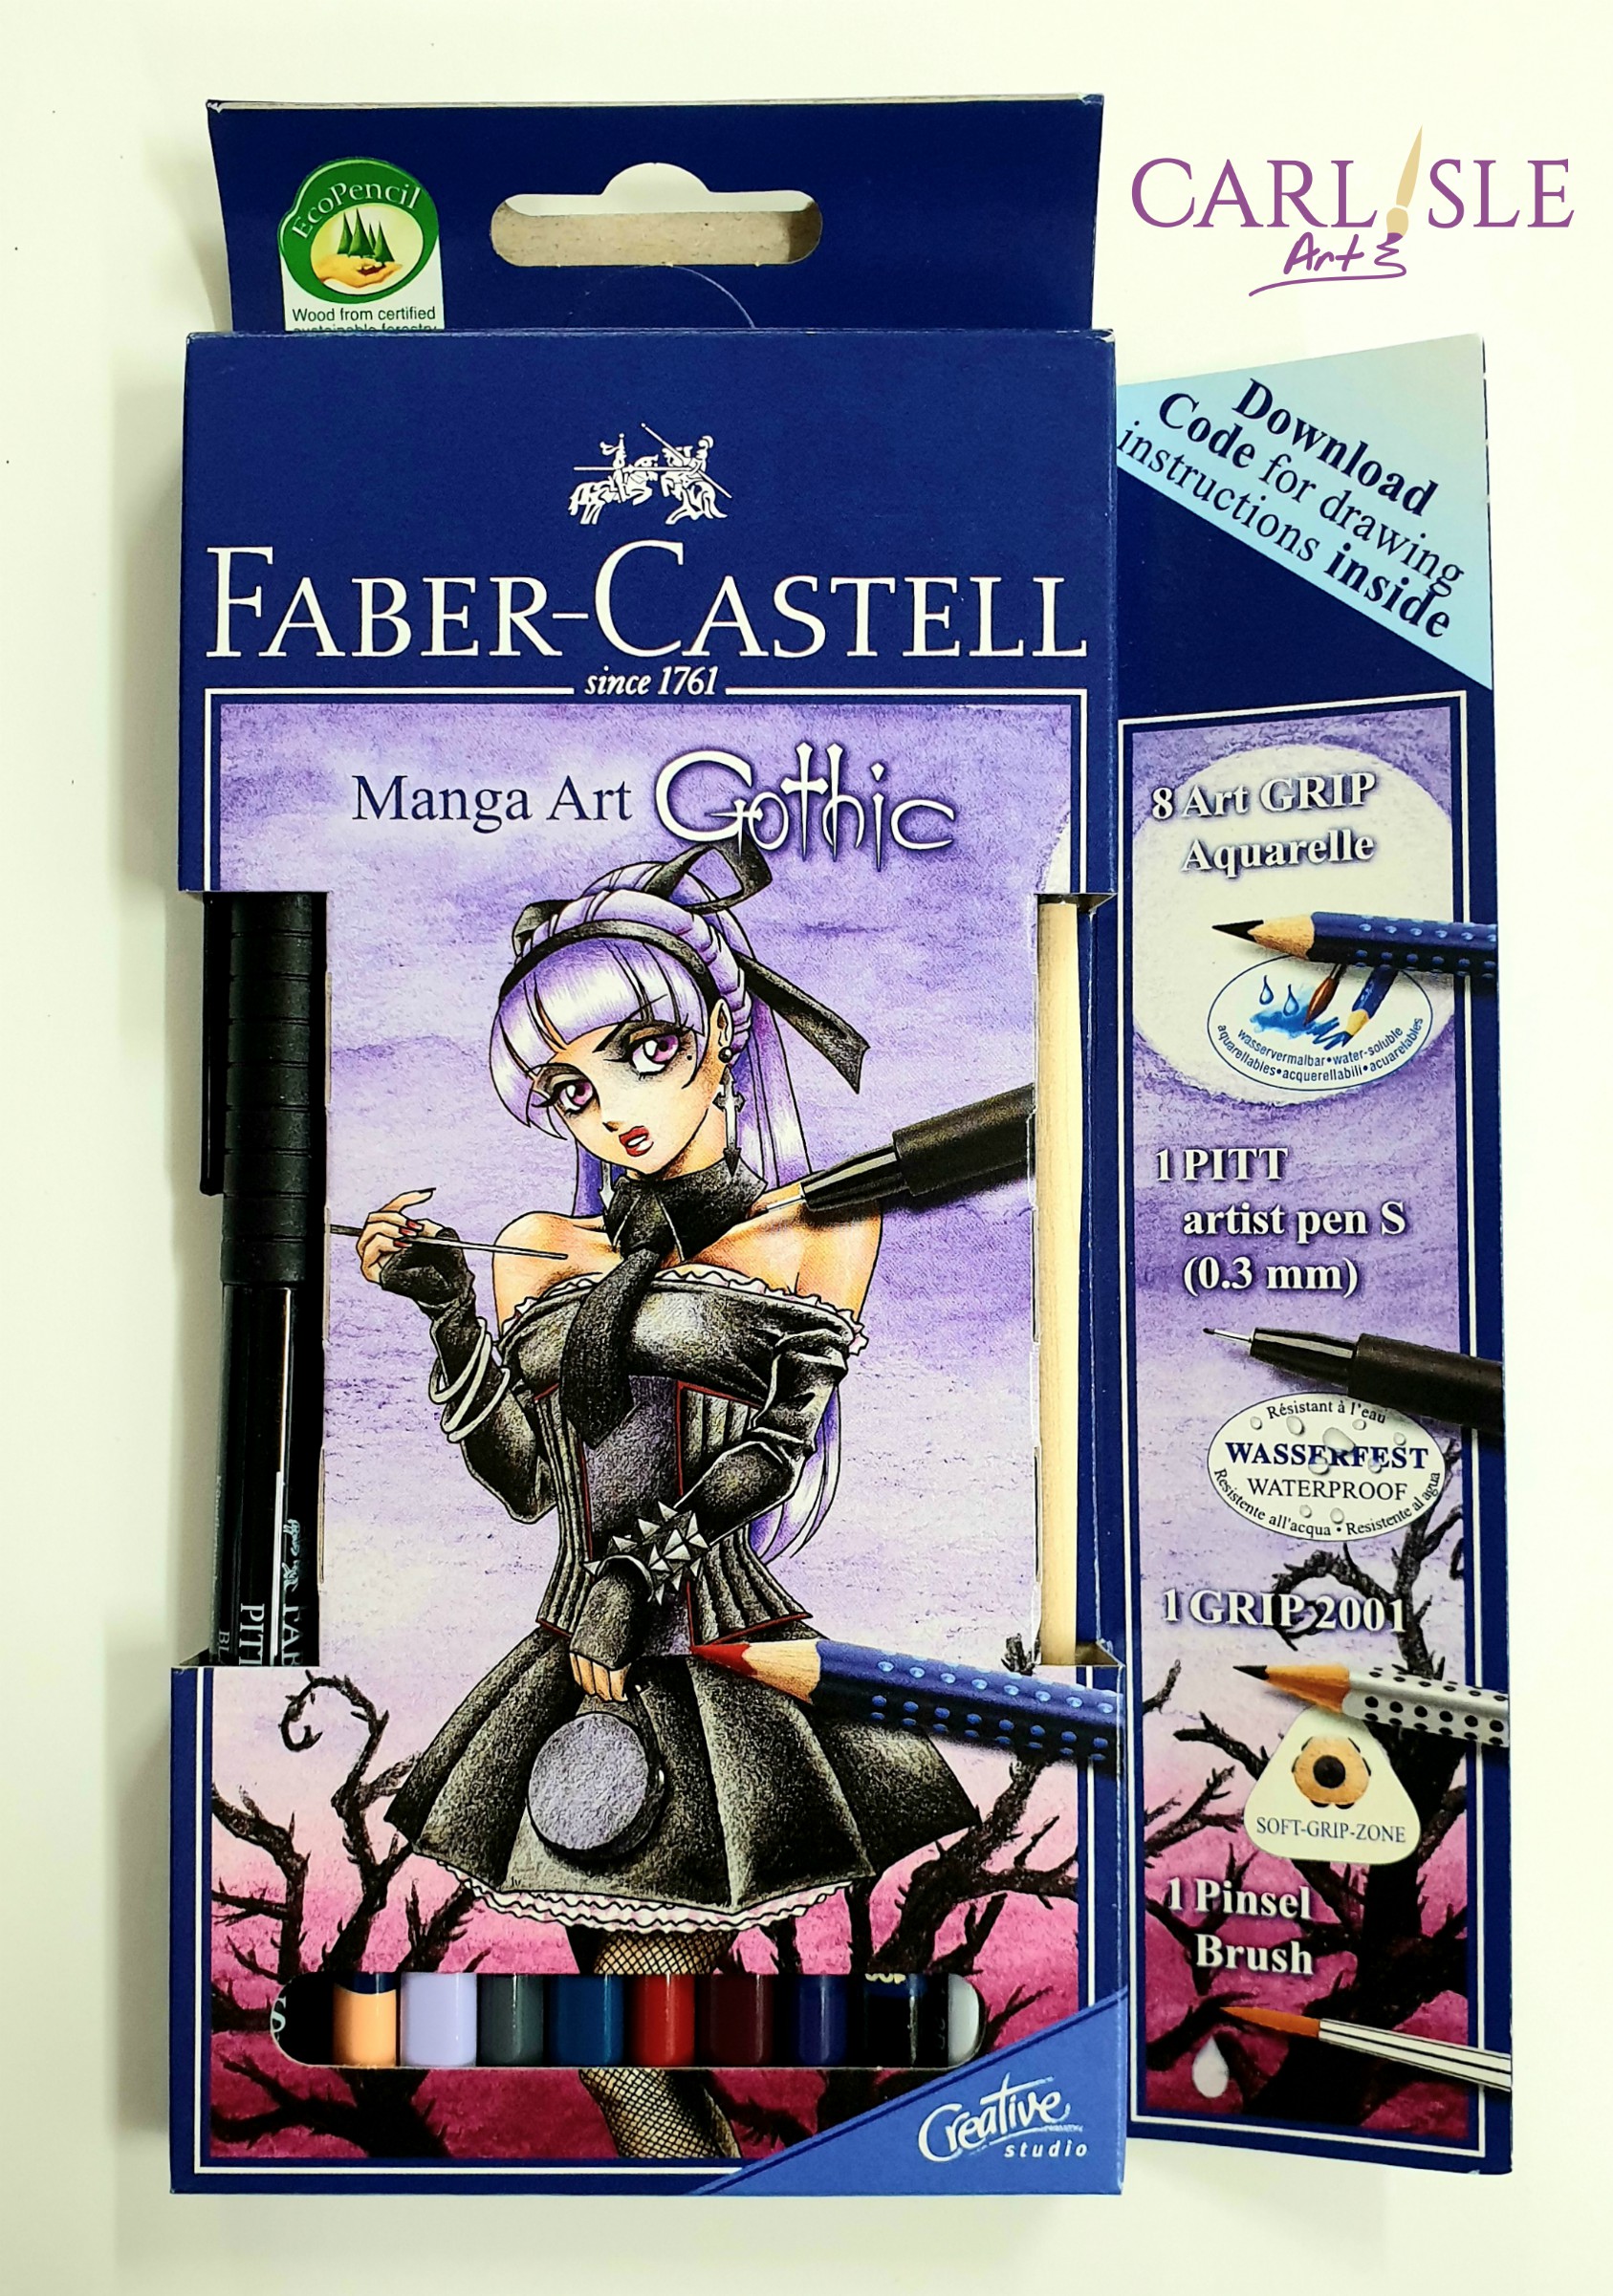 Faber-Castell Manga Art Gothic Set 793518965083 | eBay